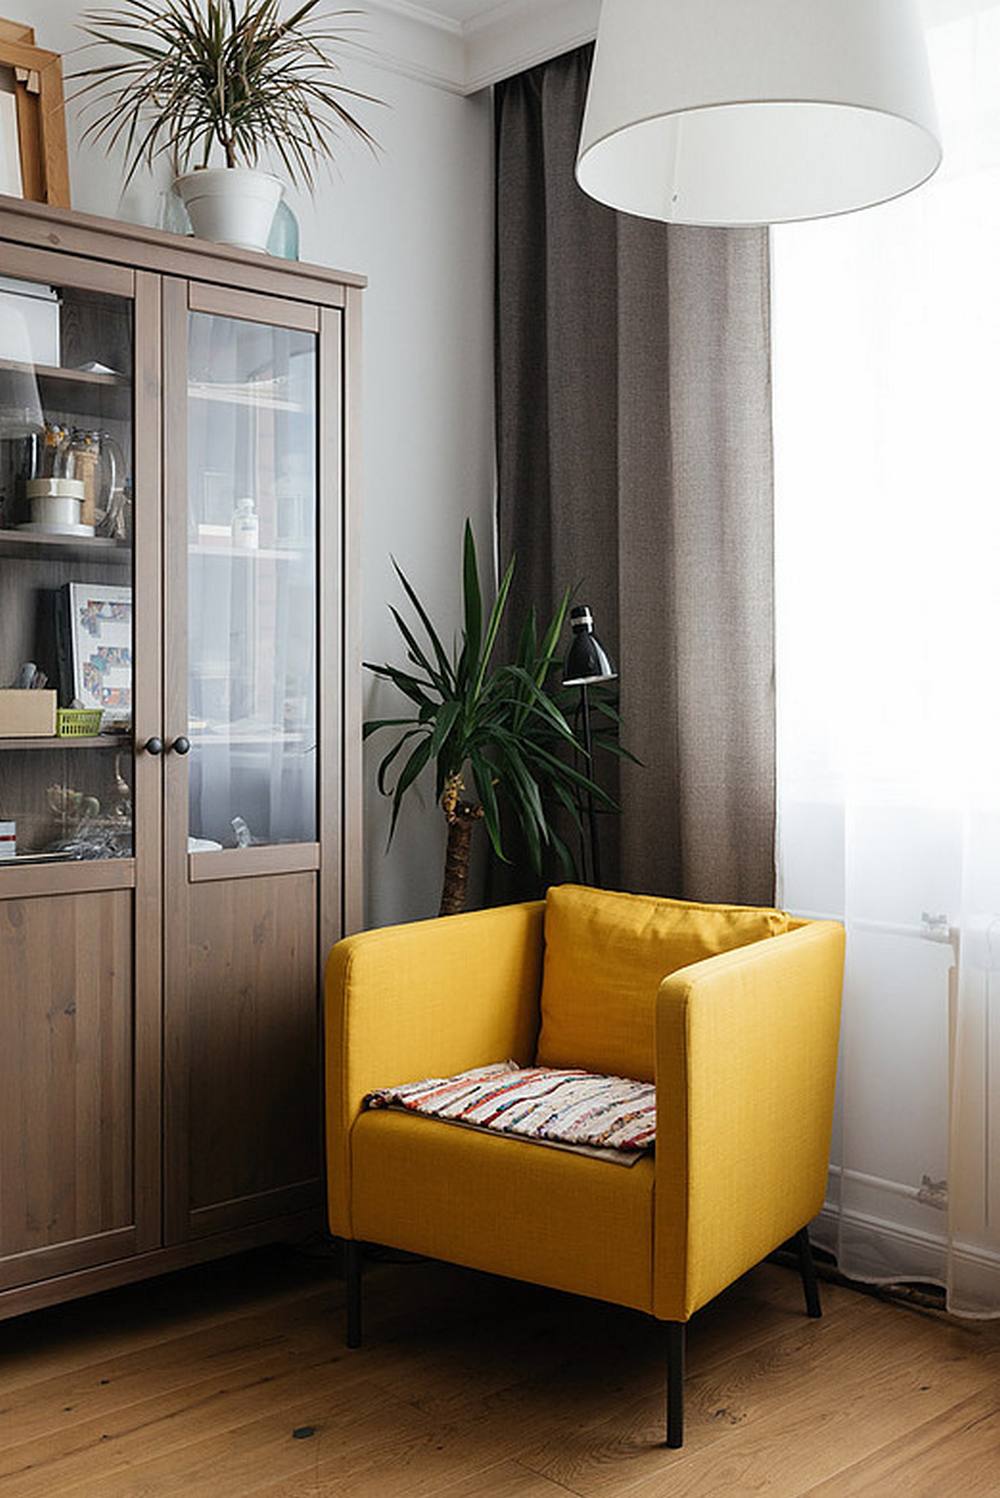 Một chiếc ghế bành màu vàng mù tạt nổi bật ở góc phòng khách, cạnh ô cửa sổ đầy nắng ấm, bố trí cùng với nó một chiếc đèn sàn dáng cao thanh mảnh tạo nên khu vực đọc sách tuyệt vời cho gia chủ.